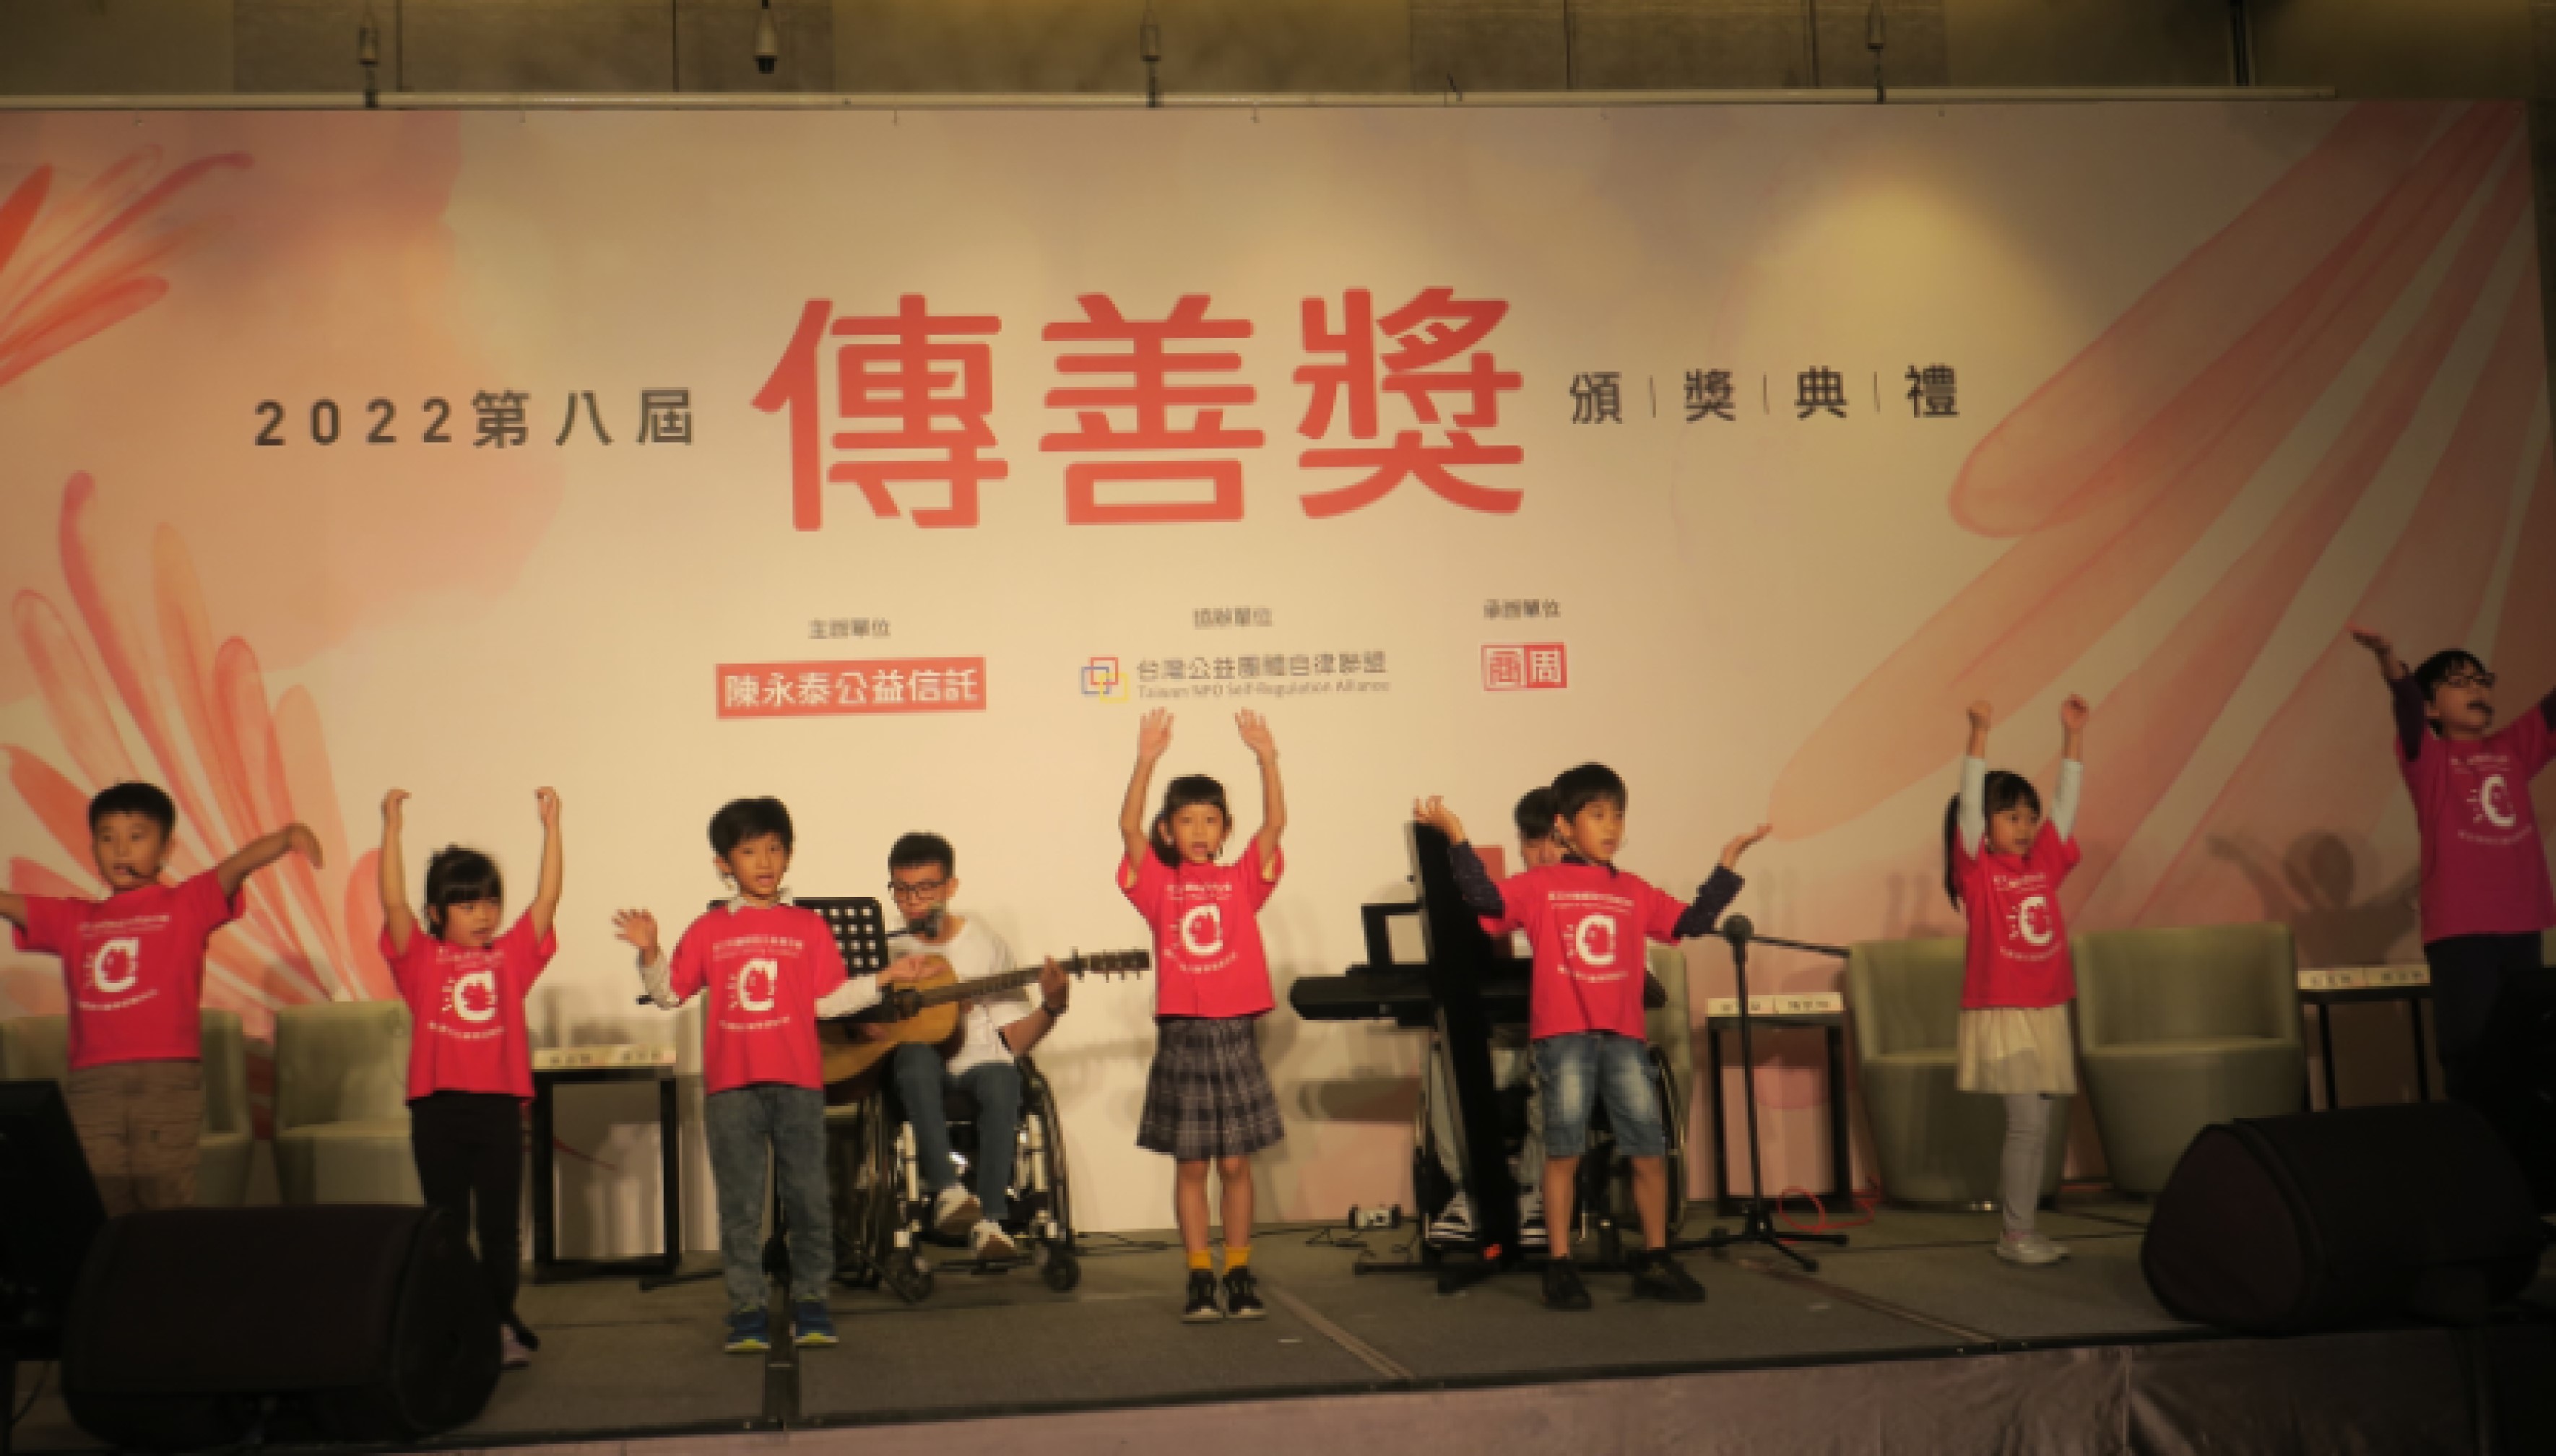 雅文兒童聽語文教基金會服務的聽障孩童在台上表演。(圖/李容珍攝影)